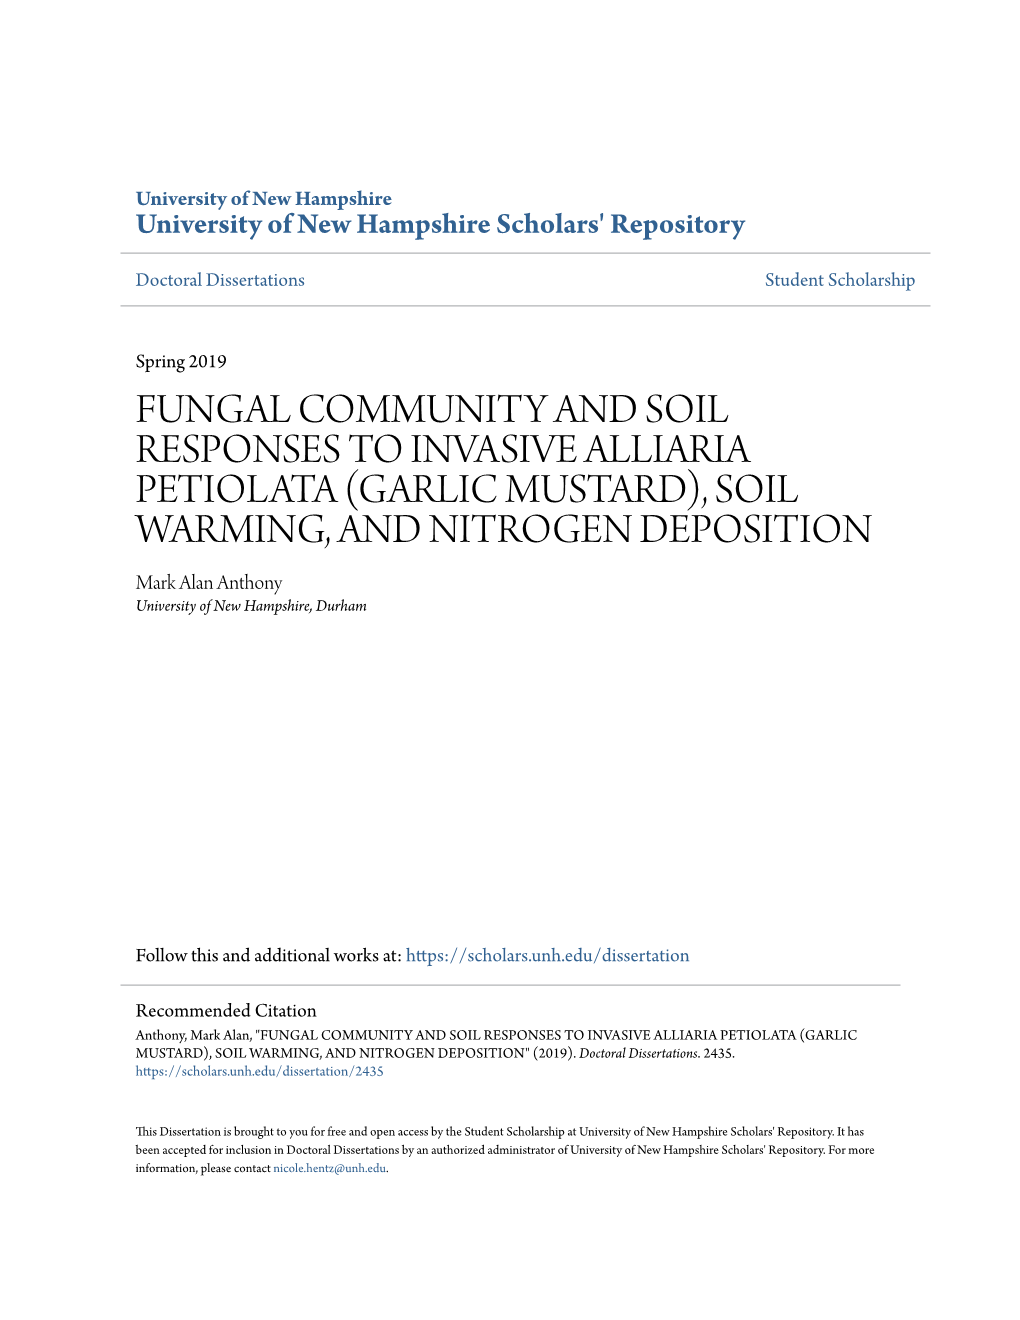 Fungal Community and Soil Responses to Invasive Alliaria Petiolata